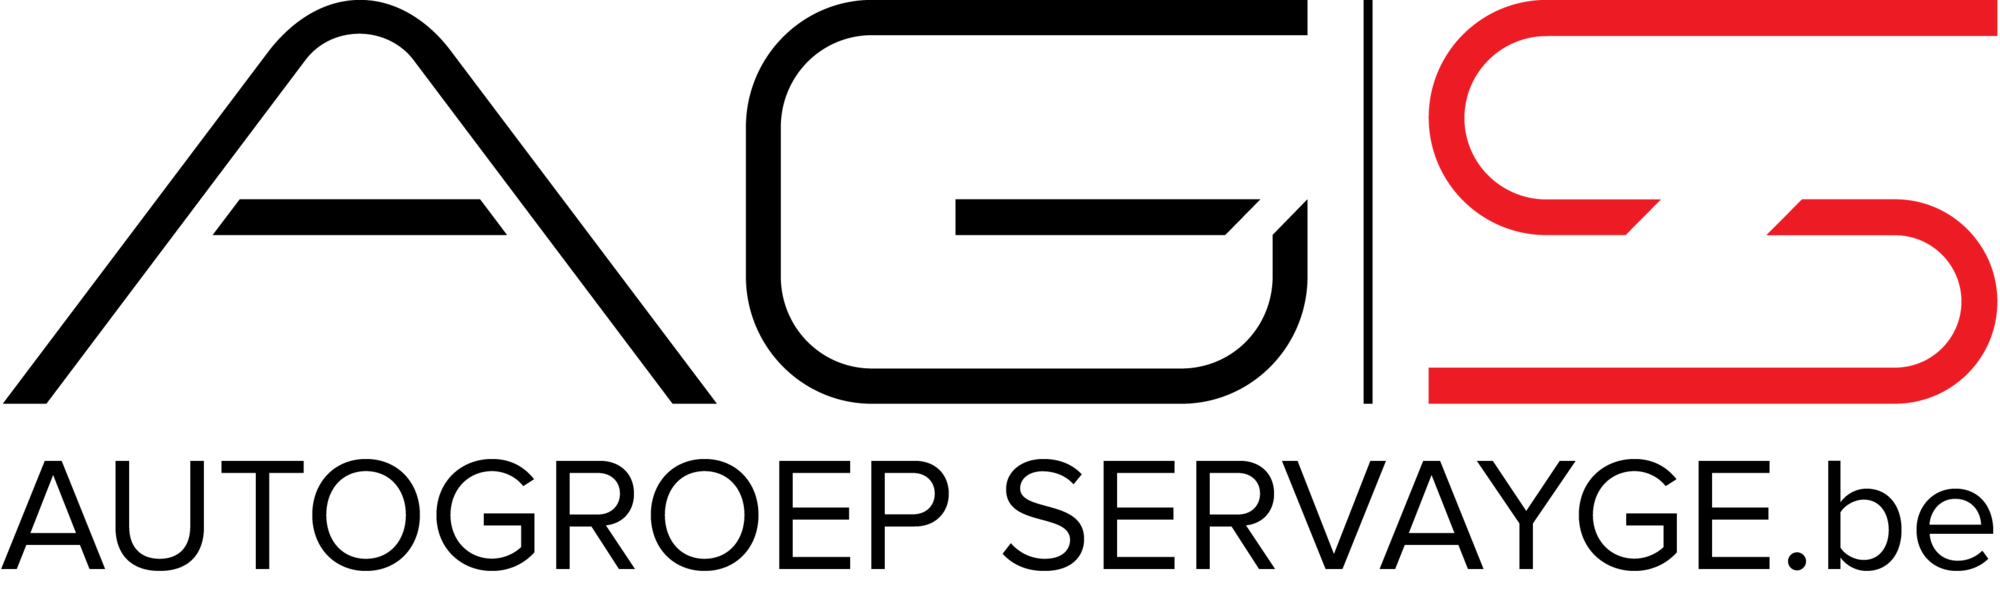 ags-logo-zwart-002-.png